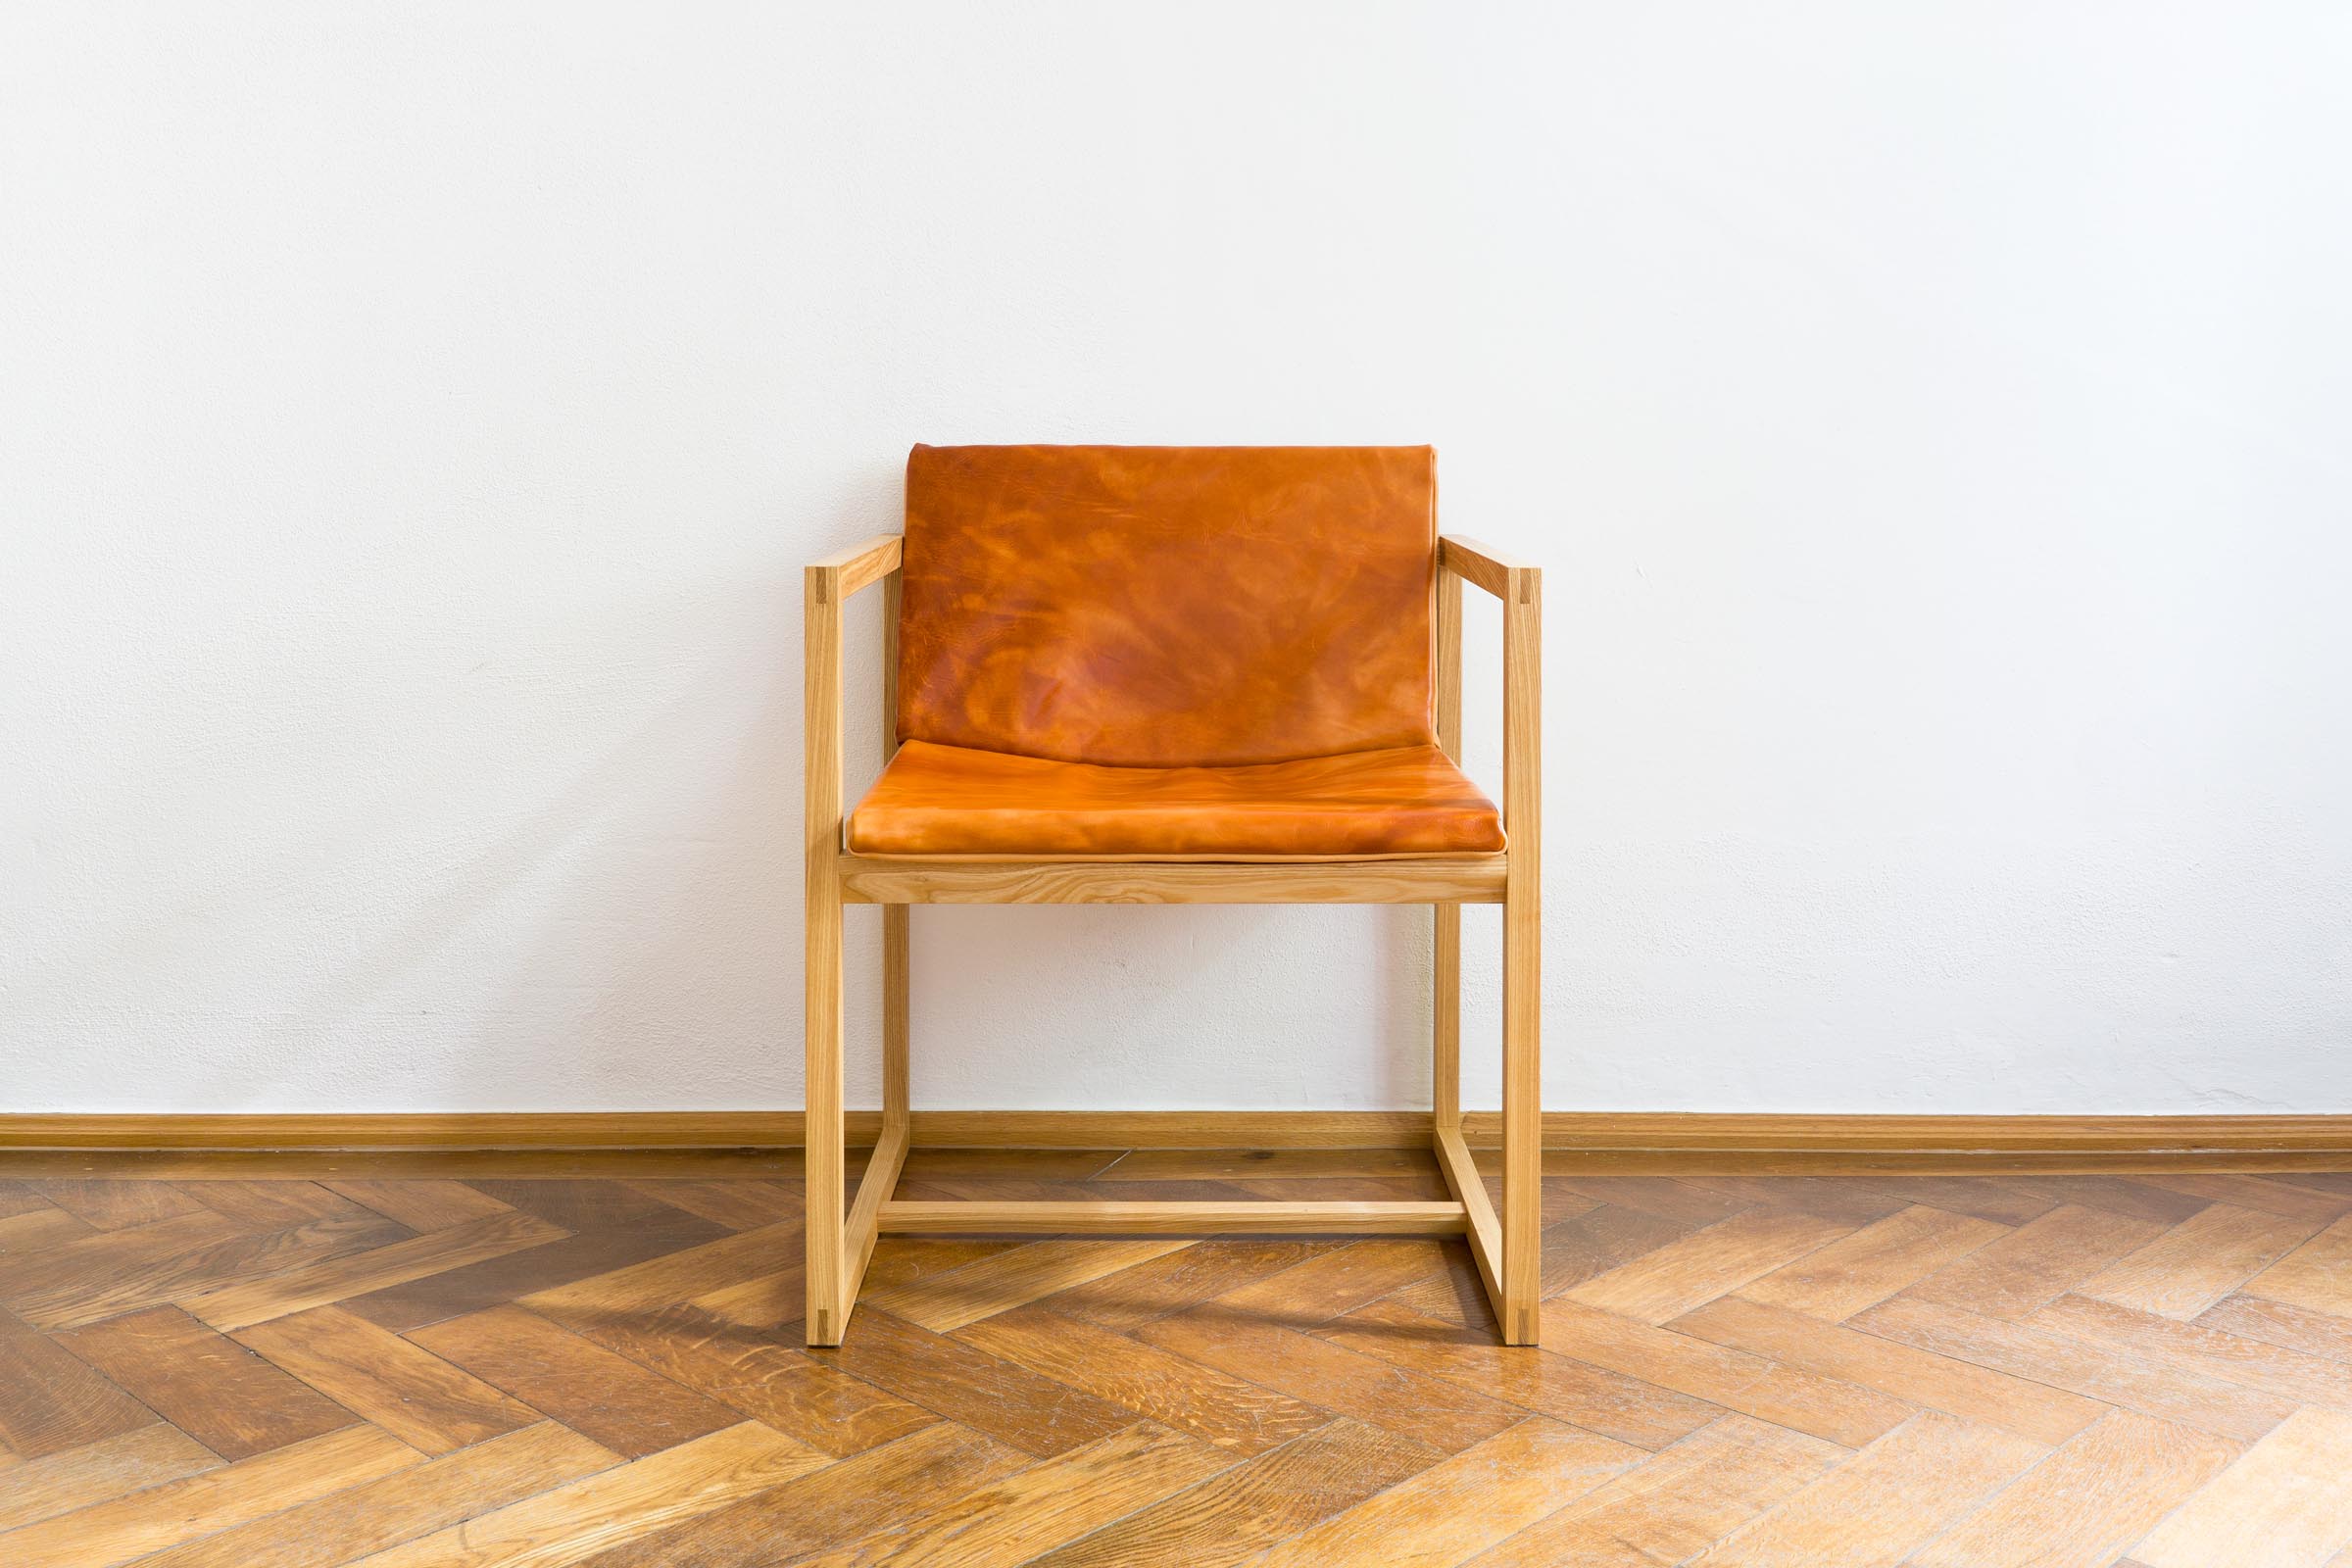 Stuhl aus Massivholz Esche handgefertigt als Einzelmöbelstück von The Trees of Life in Perg in Oberösterreich